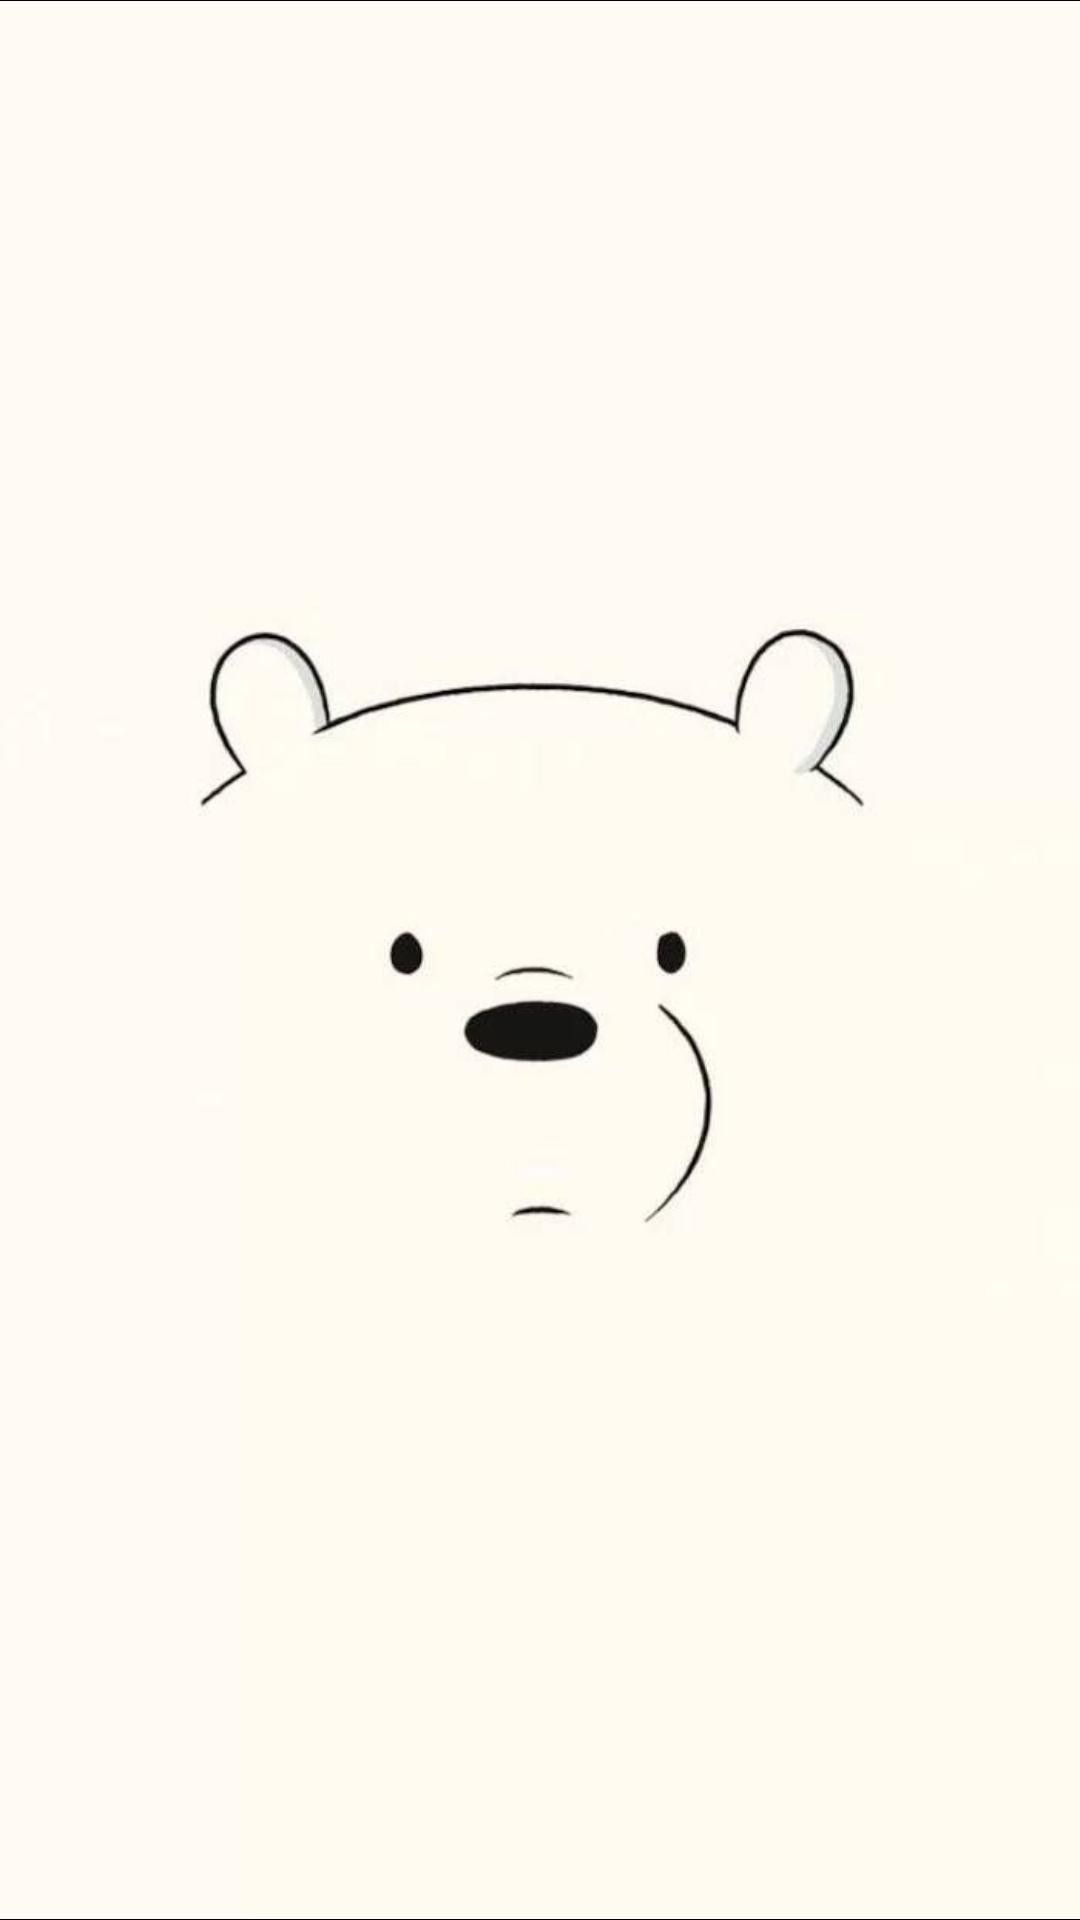 we bare bears wallpaper iphone,bear,cartoon,head,nose,snout